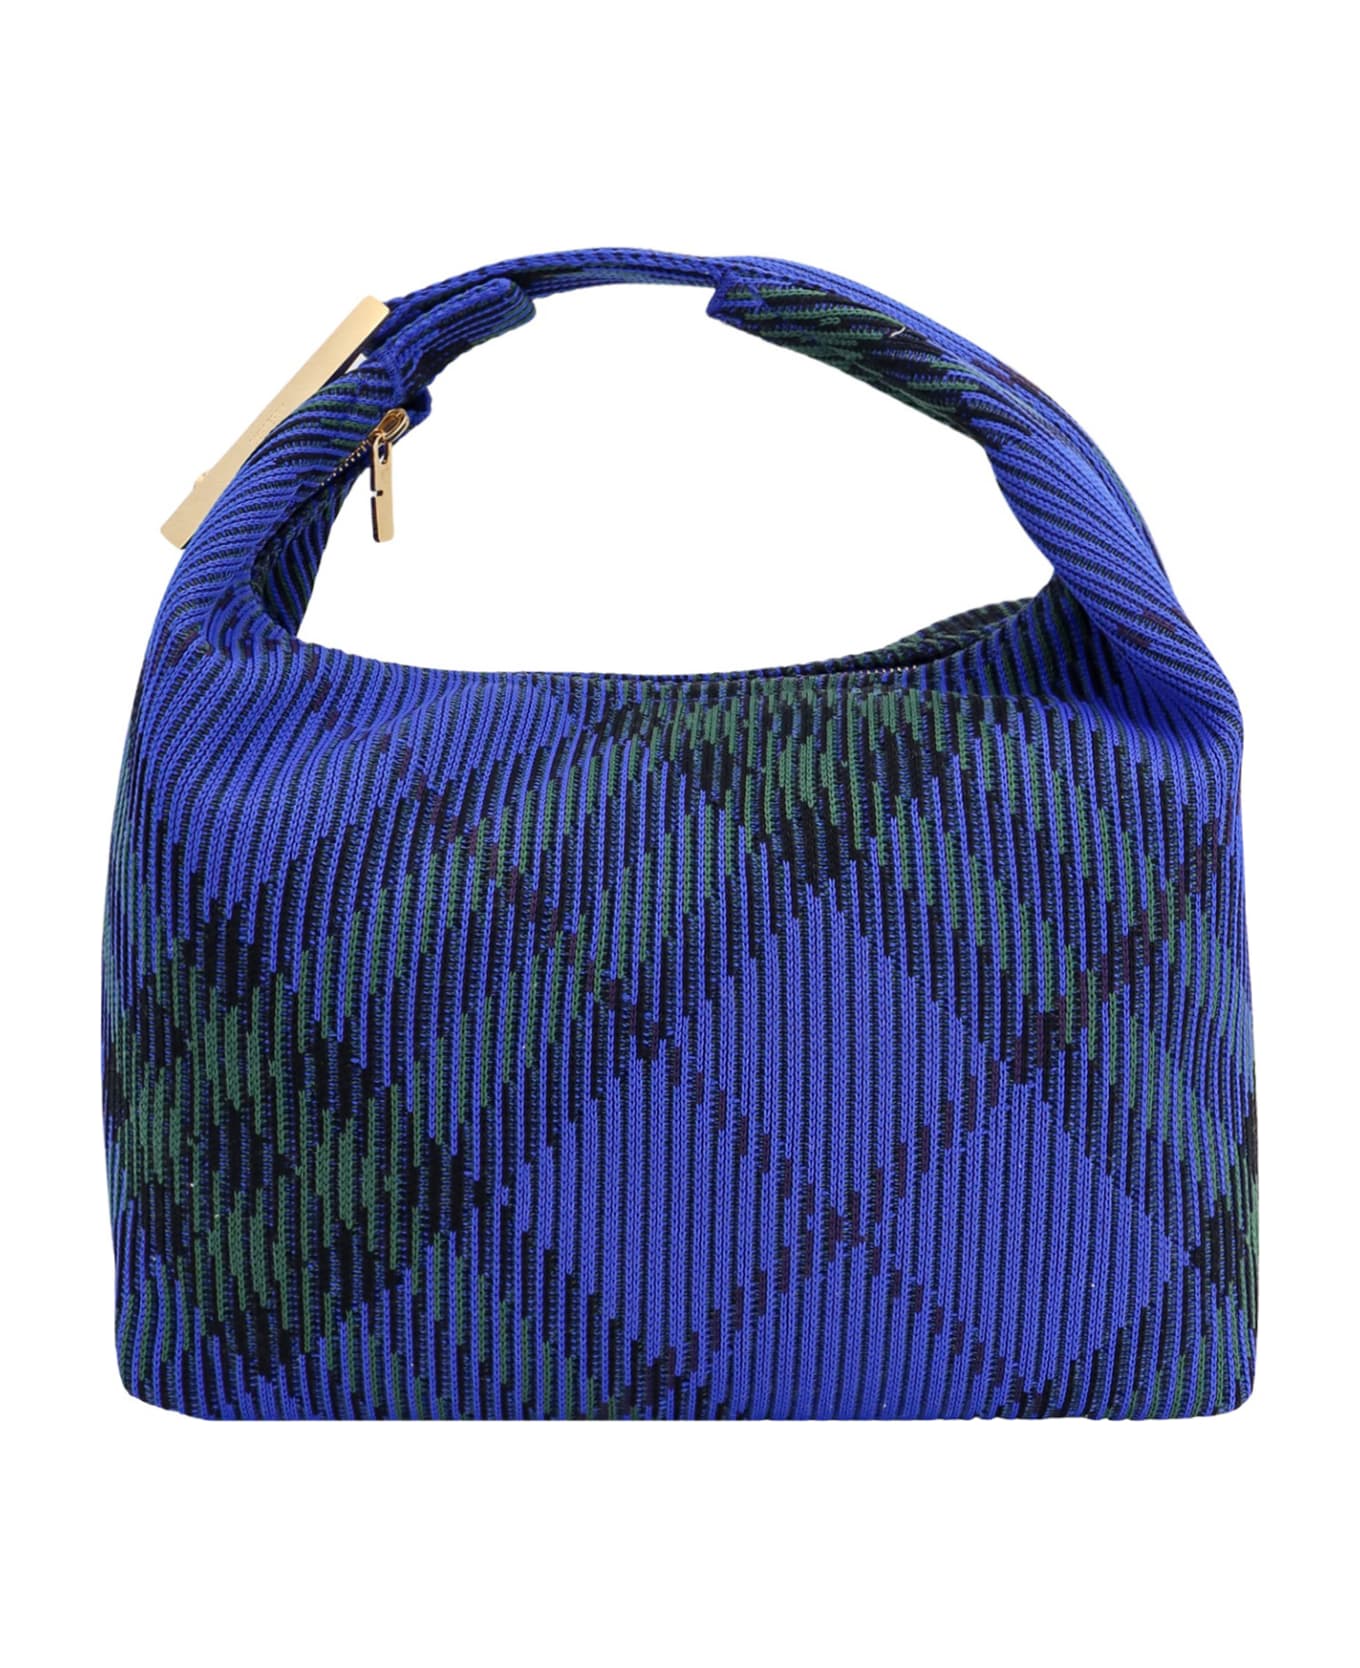 Burberry Peg Media Handbag - Blue